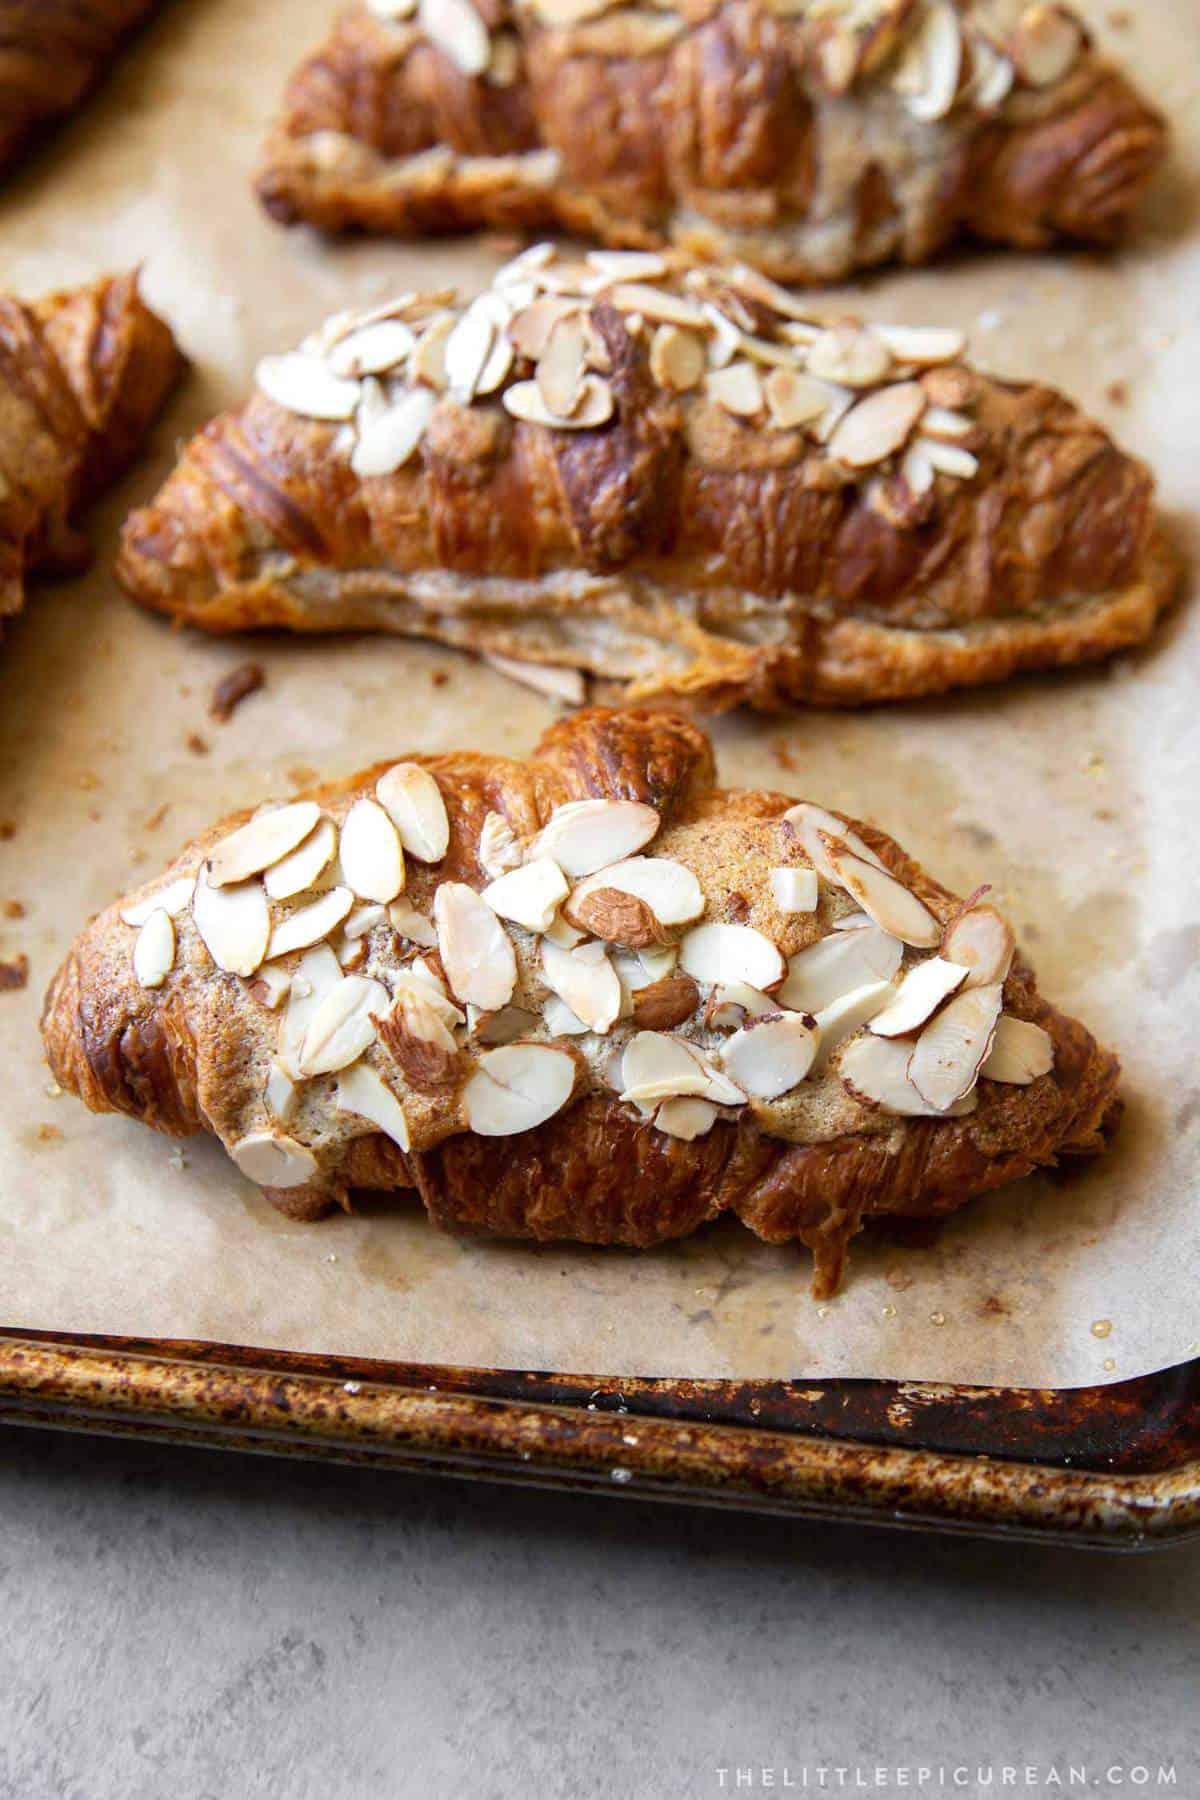 Almond Croissant - The Little Epicurean